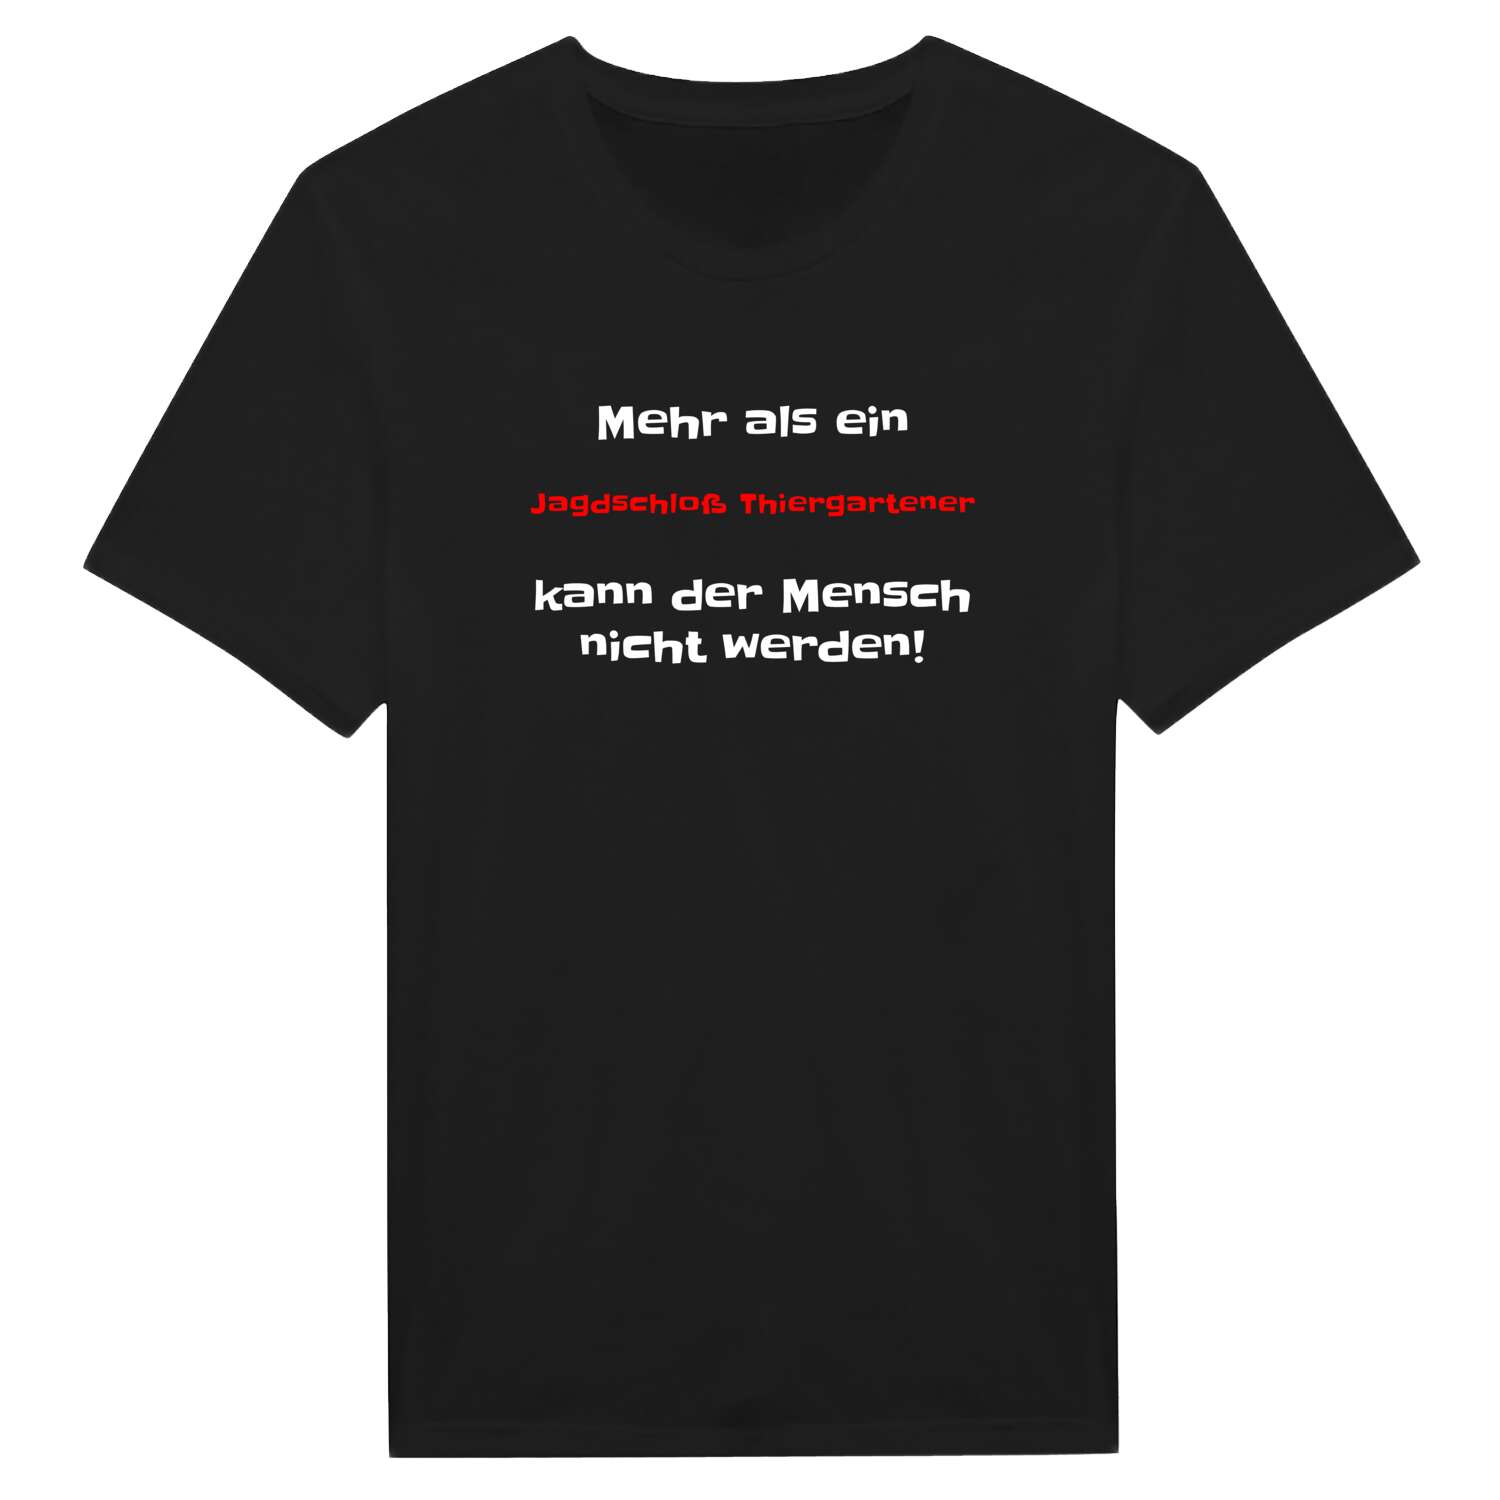 Jagdschloß Thiergarten T-Shirt »Mehr als ein«